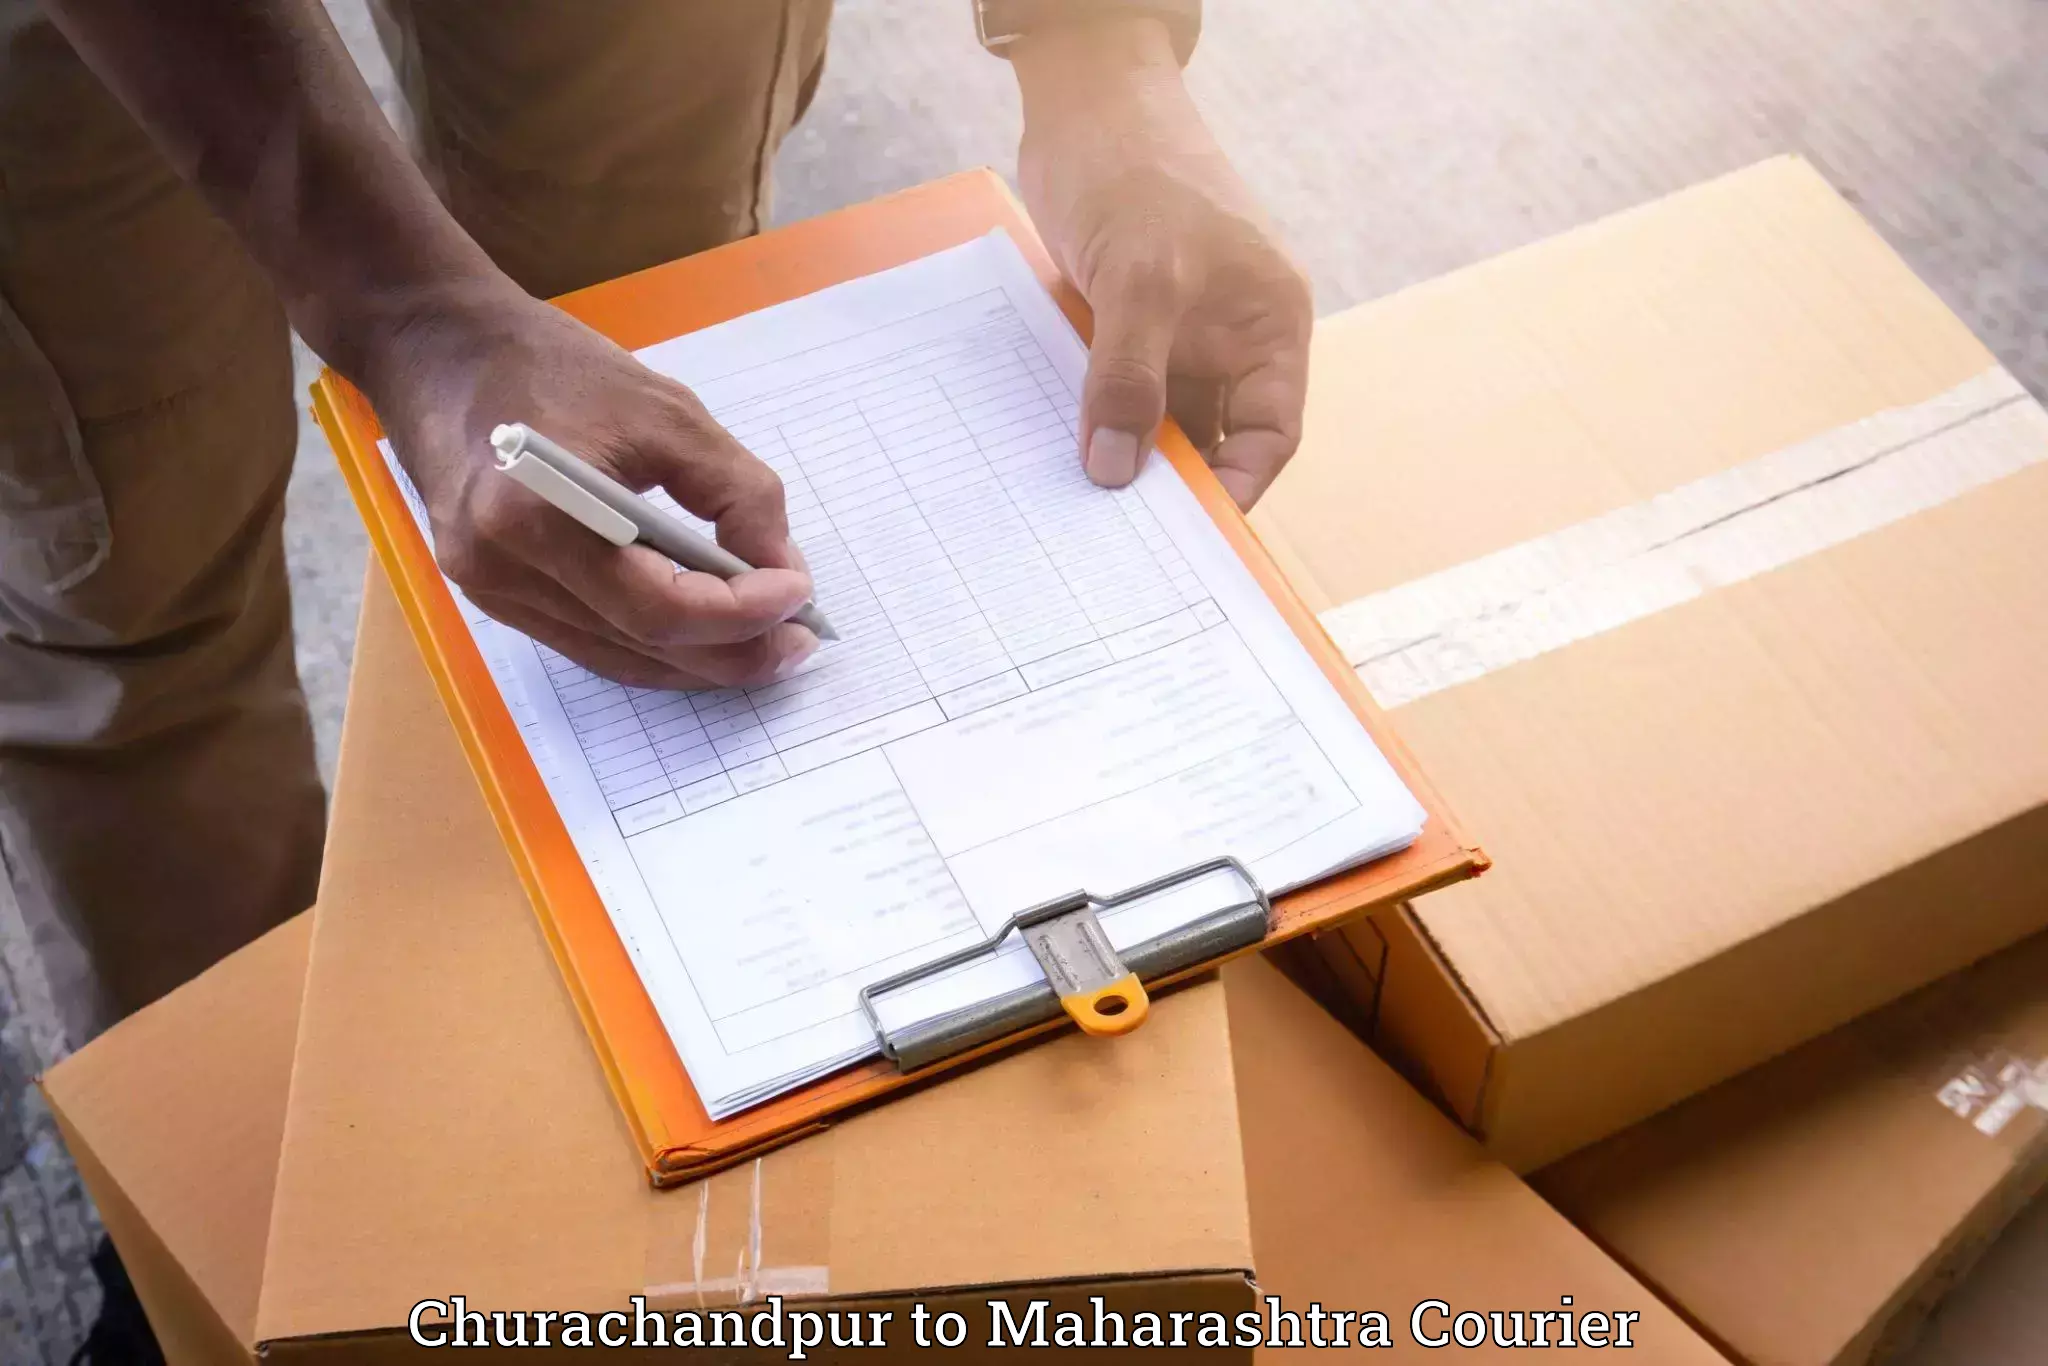 Furniture transport service Churachandpur to Lanja